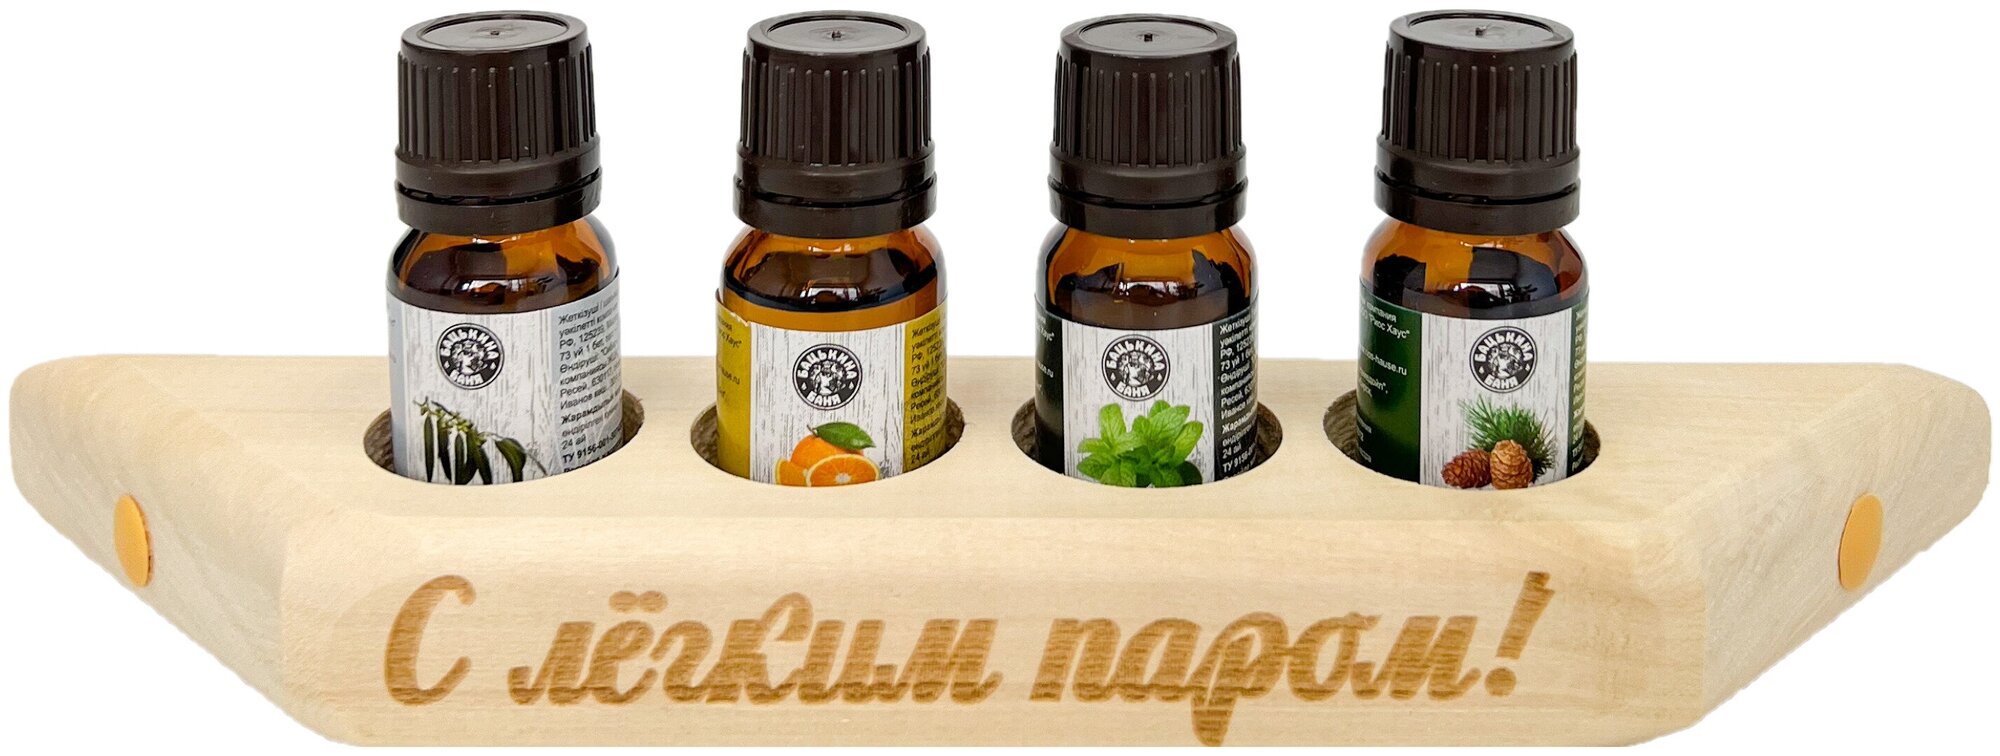 Эфирные масла натуральные для бани и сауны набор Бацькина баня ароматизатор для дома арома масла 4 шт. с полочкой для масел